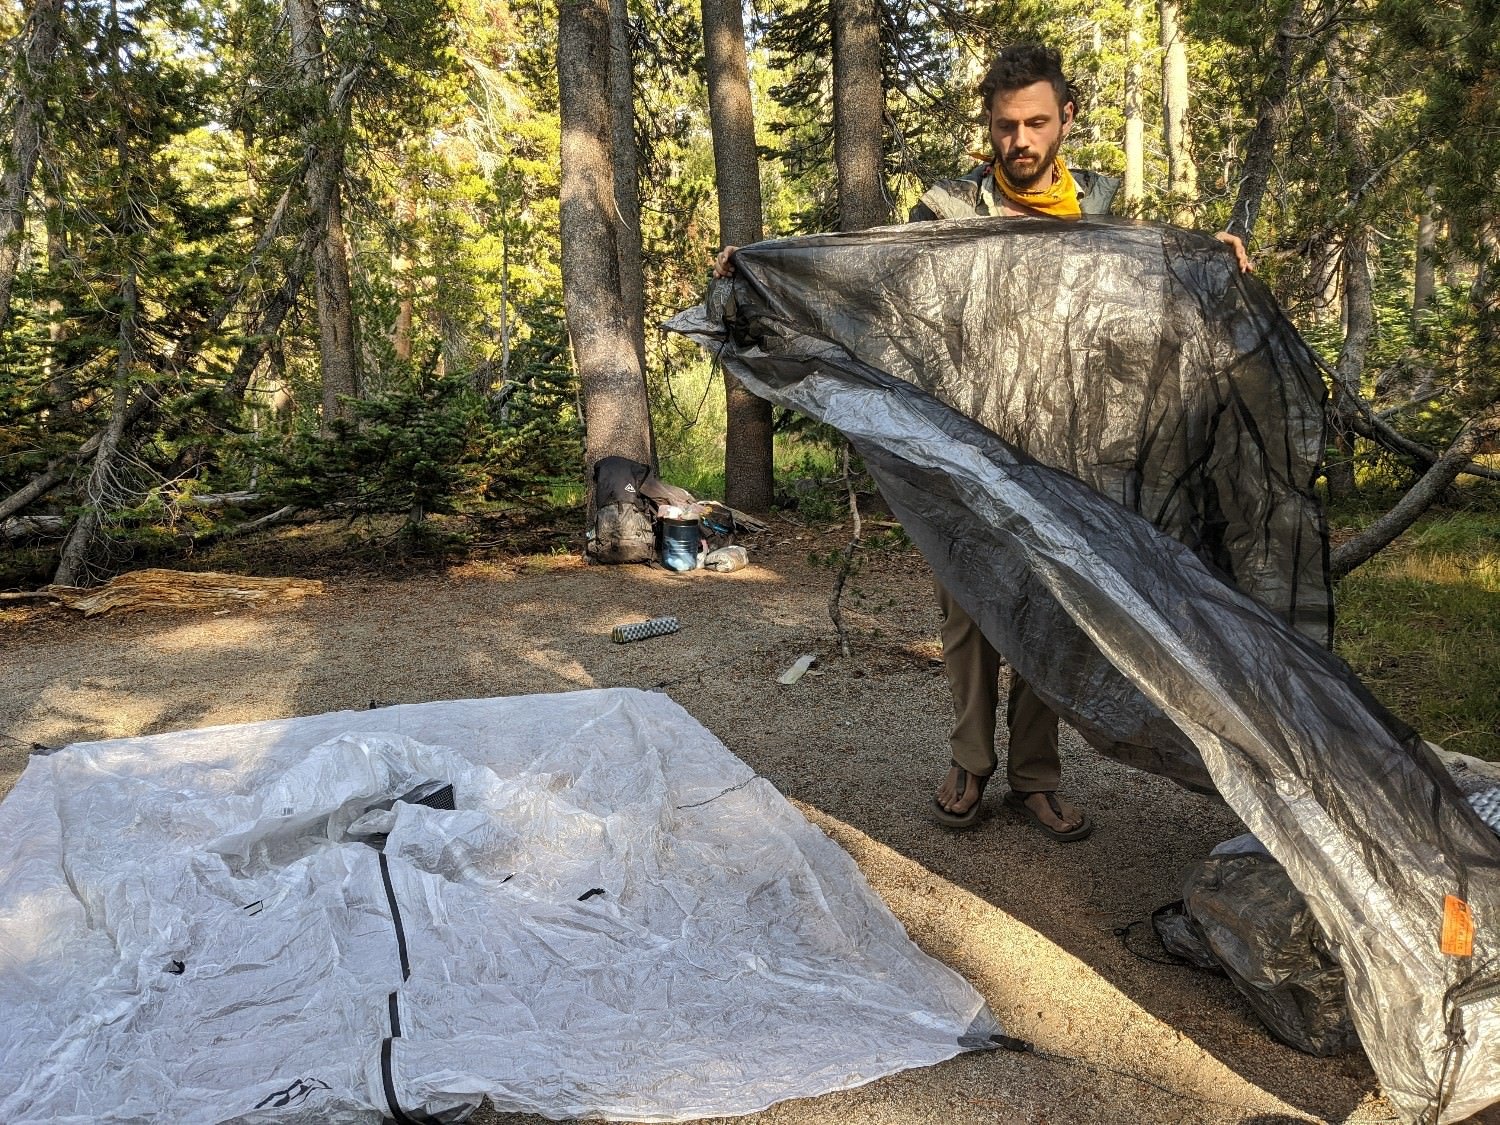 A hiker setting up the Hyperlite Mountain Gear Ultamid 2 tent